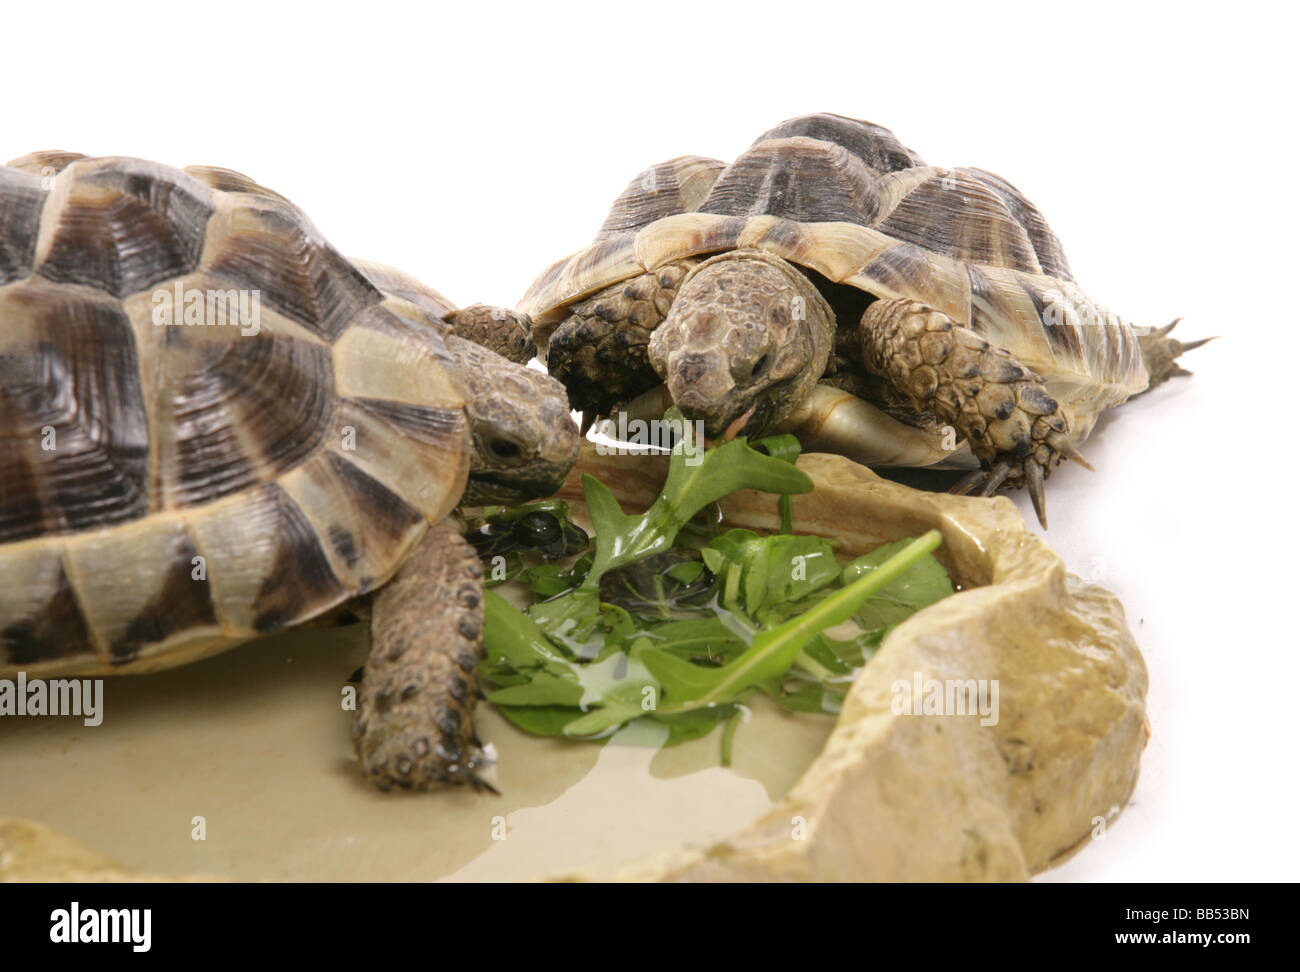 Paire de tortues d'Hermann dans un studio portrait de l'alimentation Banque D'Images